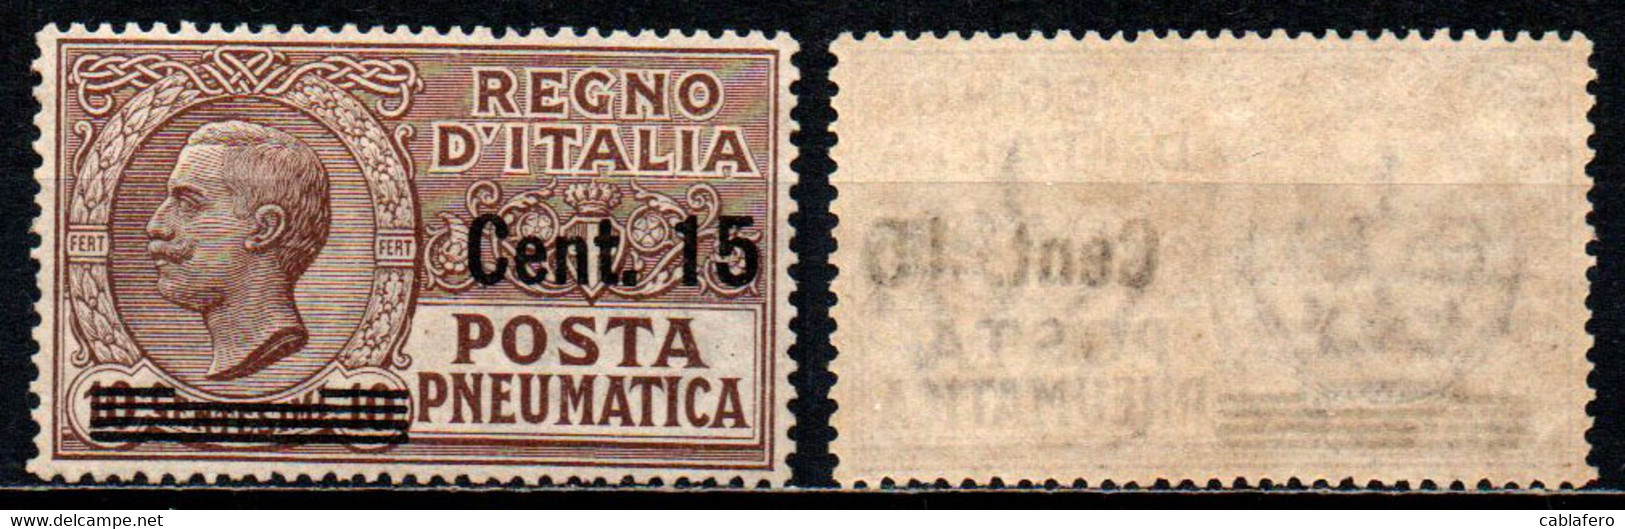 ITALIA REGNO - 1924 - EFFIGIE DI VITTORIO EMANUELE III - SOPRASTAMPA DA 15 CENT. SU 10 CENT. - MNH - Poste Pneumatique